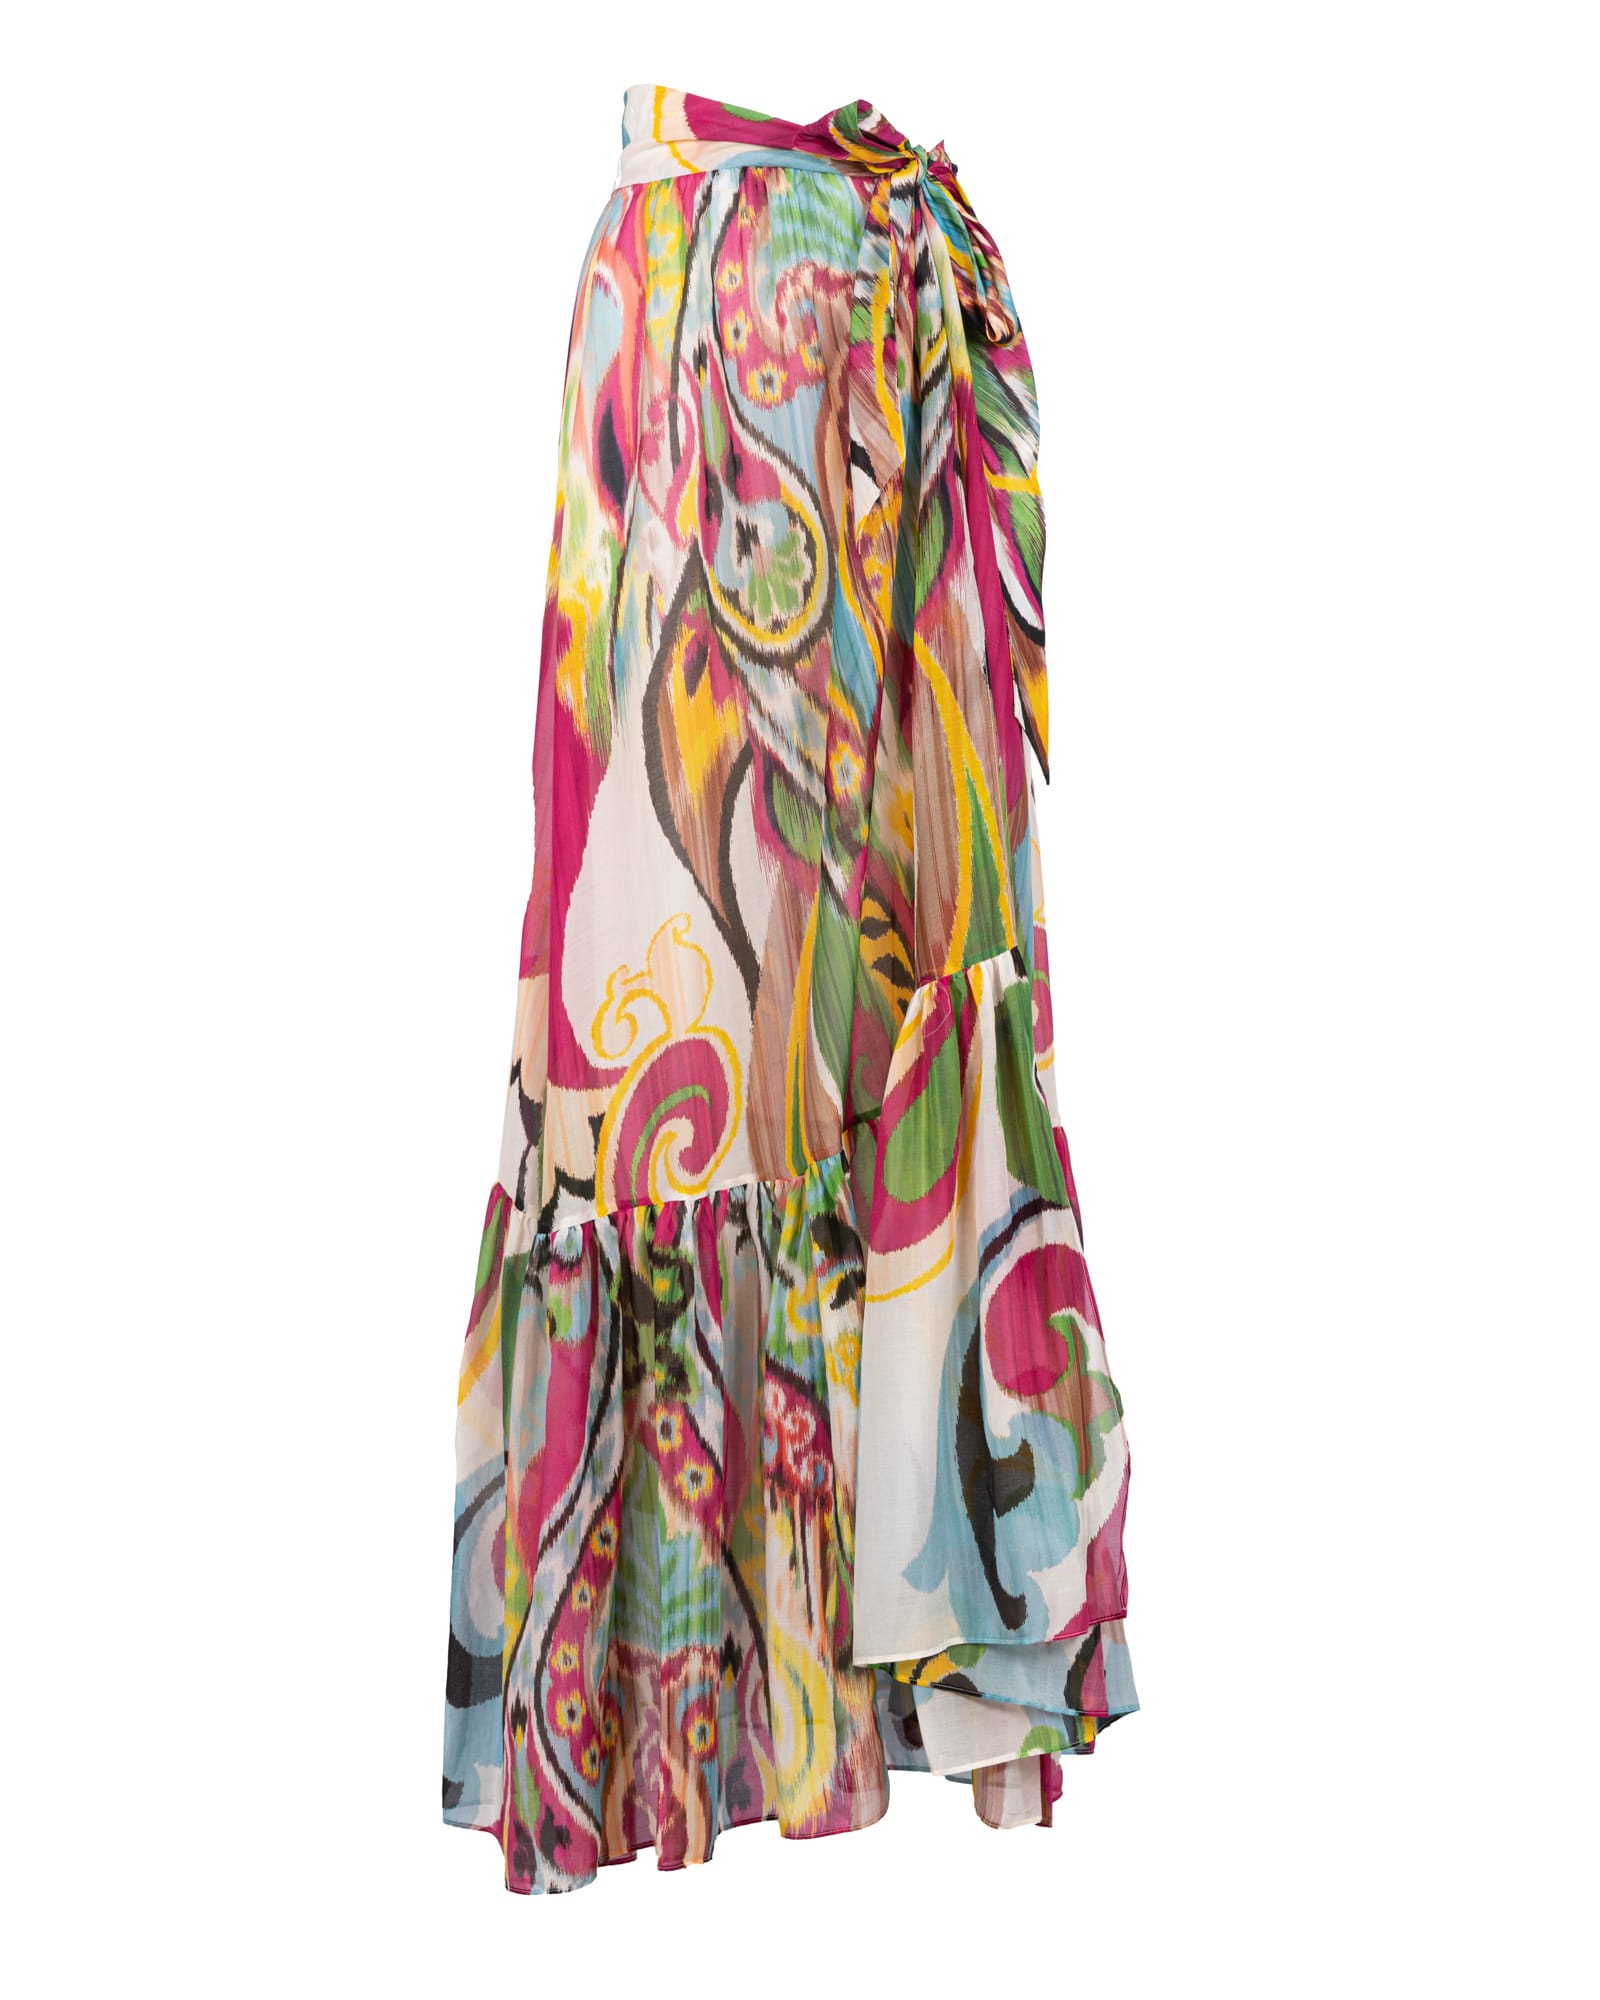 Etro Sarong-style maxi skirt embellished